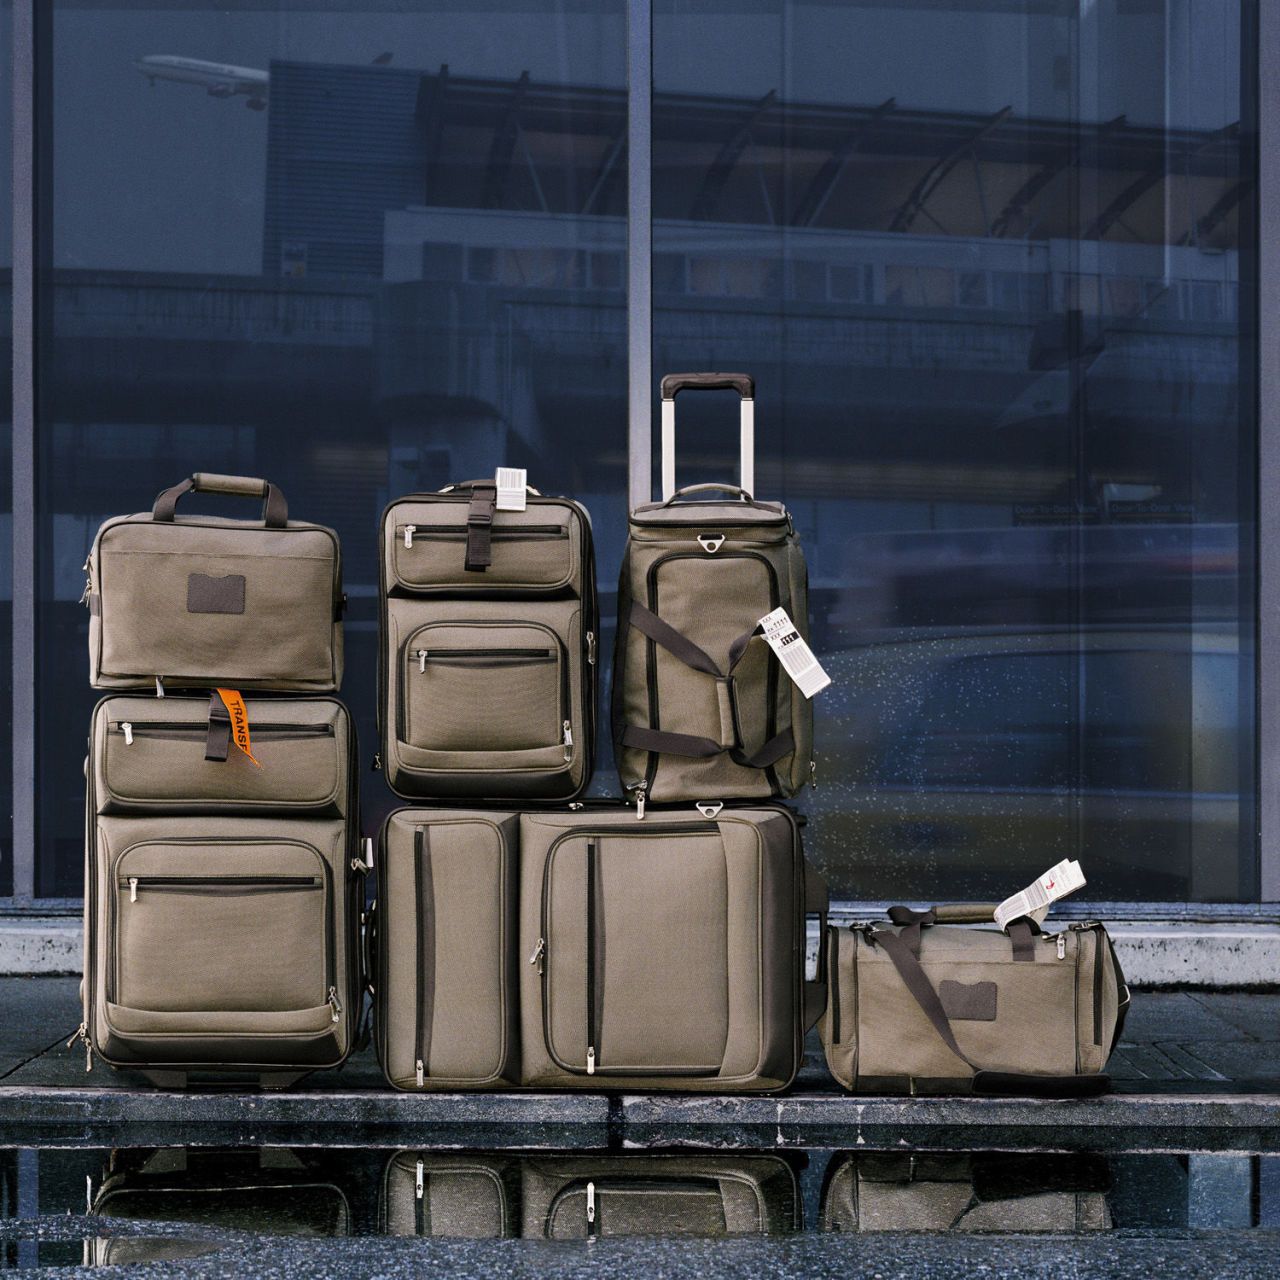 Smuggle kids bag backpack | Miscellaneous Goods | Gumtree Australia  Marrickville Area - Marrickville | 1314845517